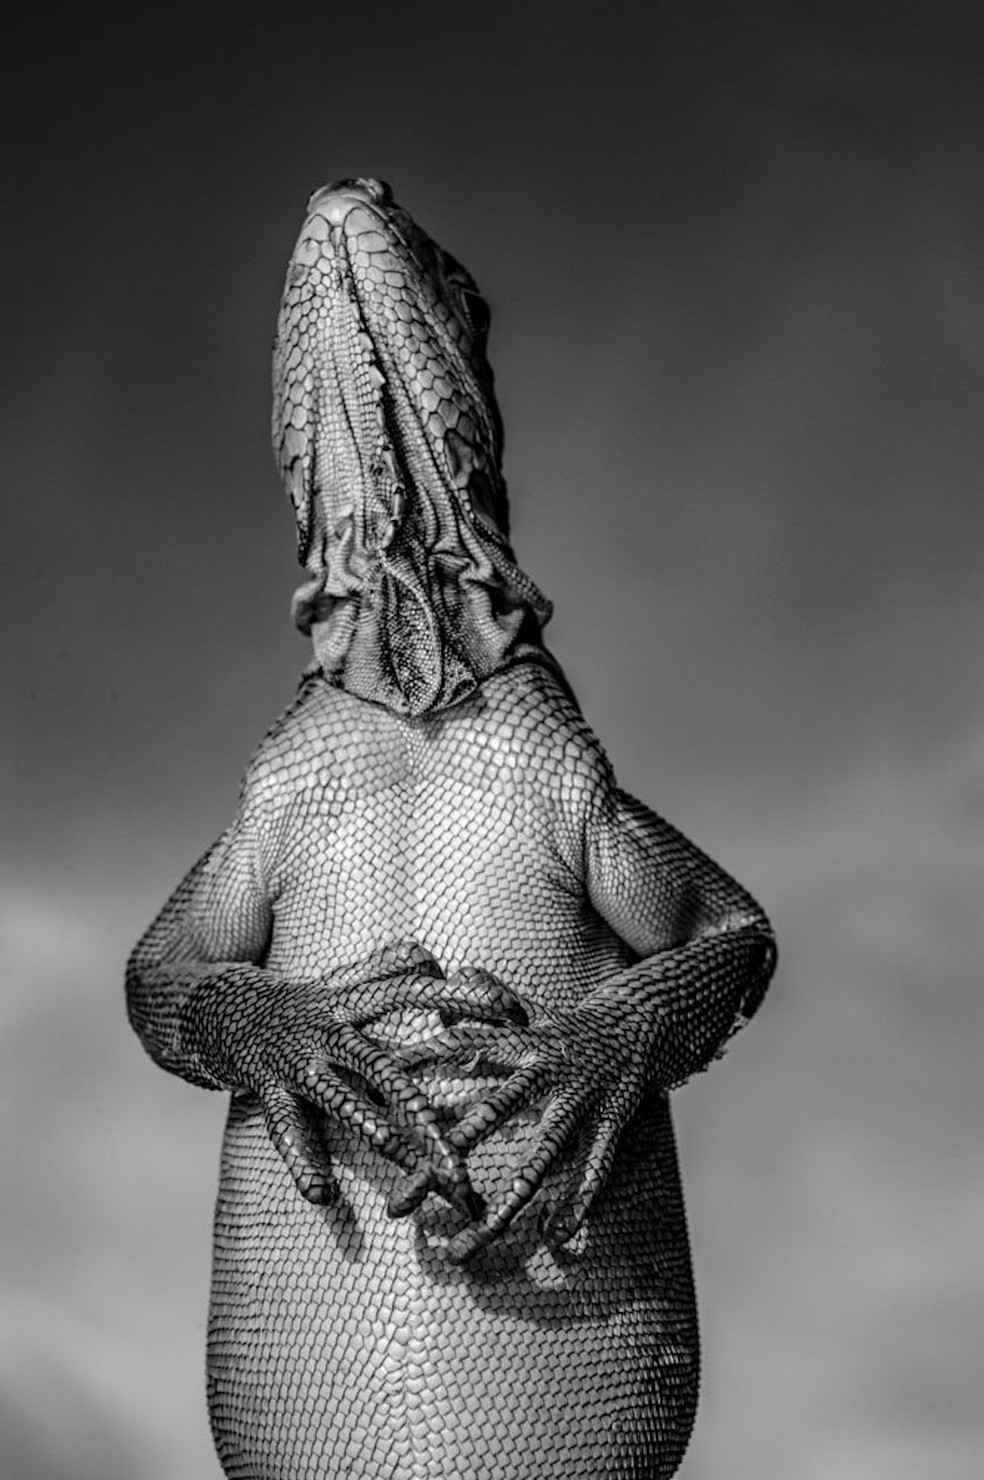 Ernoult Alain, França – A Iguana das Pequenas Antilhas, fotografada na Ilha de Granada (Ilhas de Barlavento, Caribe, Índias Ocidentais) — Foto: Ernoult Alain/ WNPA/ Divulgação